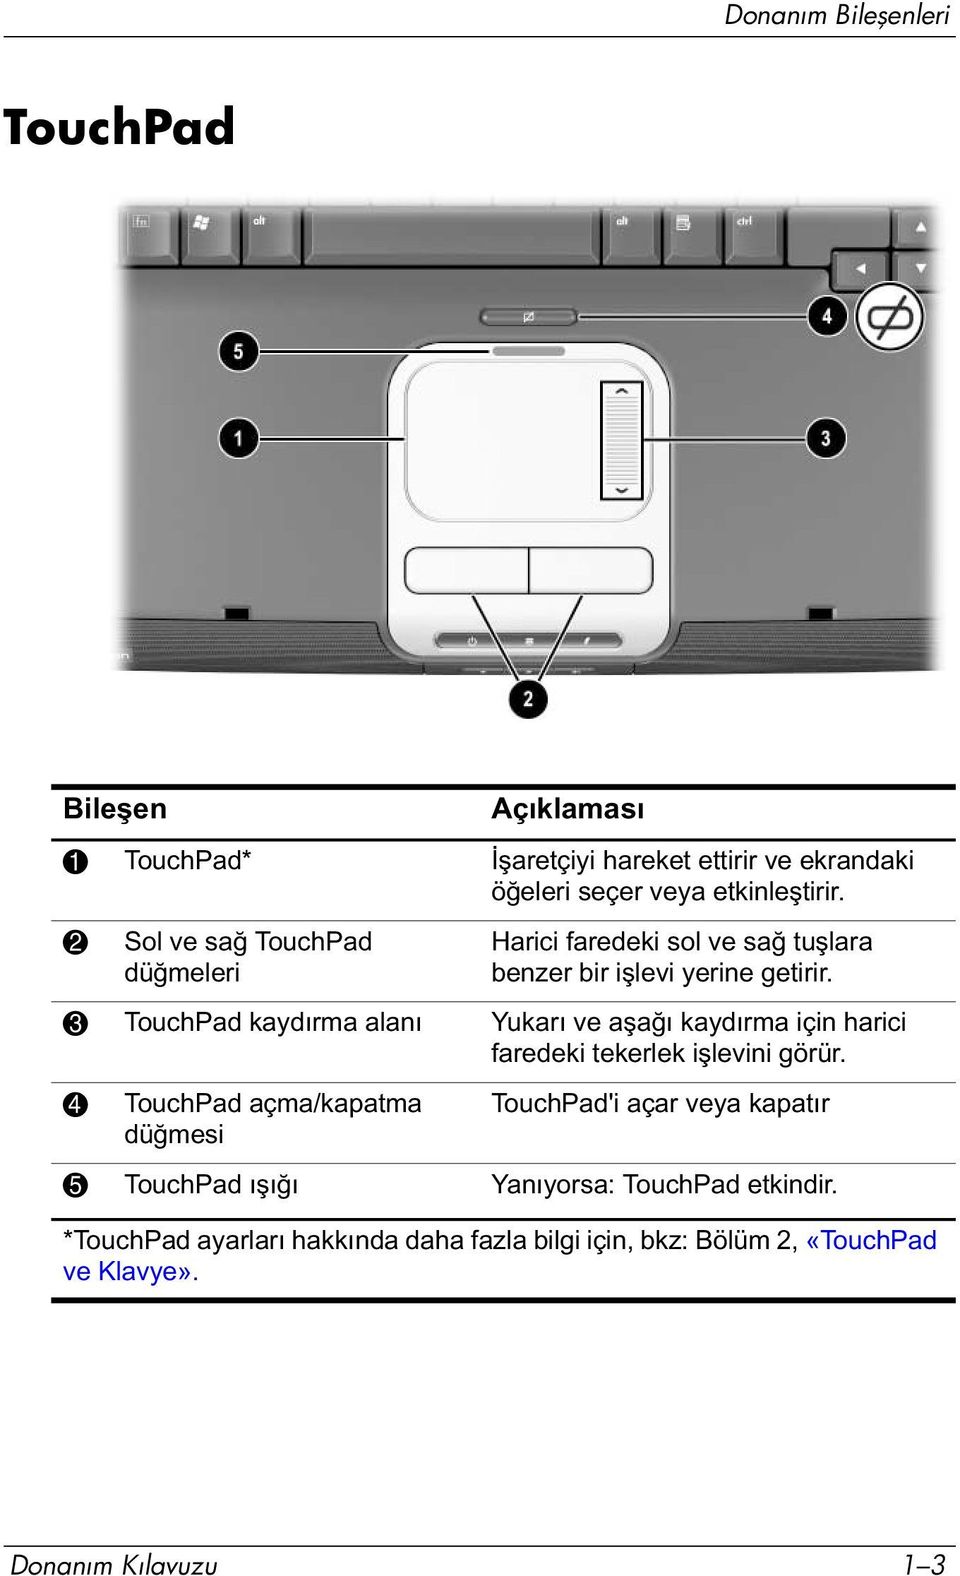 3 TouchPad kaydırma alanı Yukarı ve aşağı kaydırma için harici faredeki tekerlek işlevini görür.